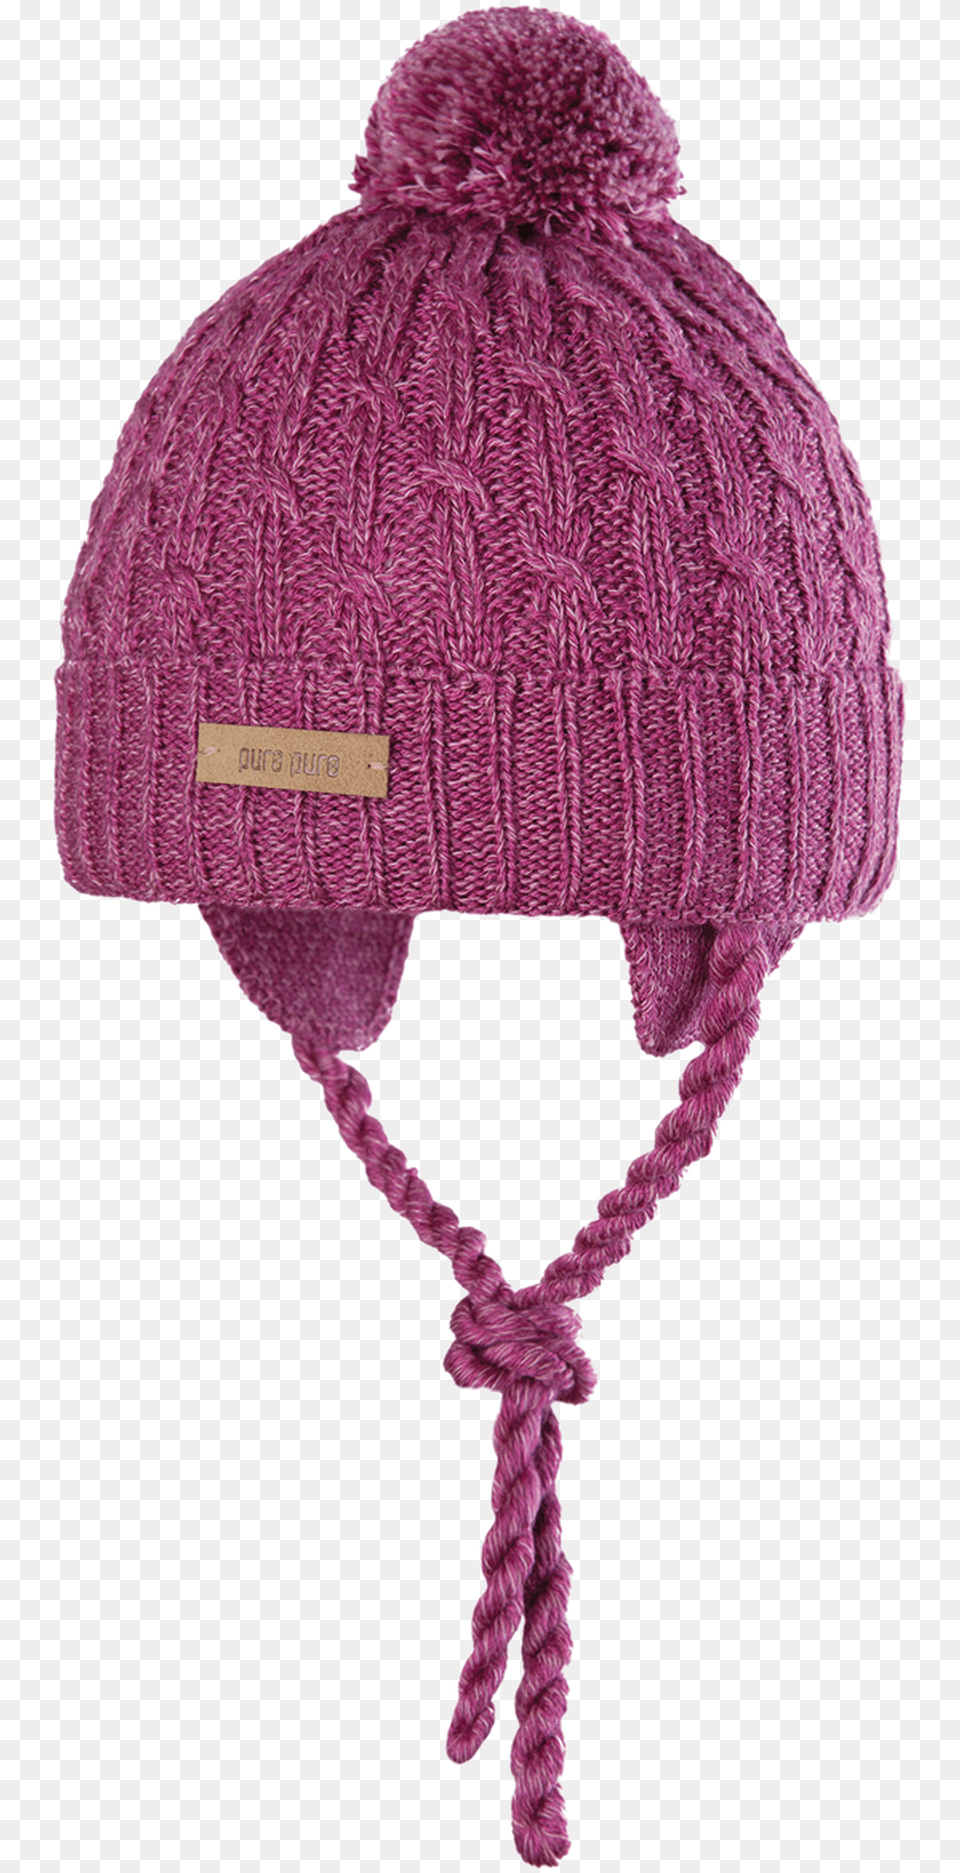 Berry Knit Cap, Bonnet, Clothing, Hat, Beanie Png Image